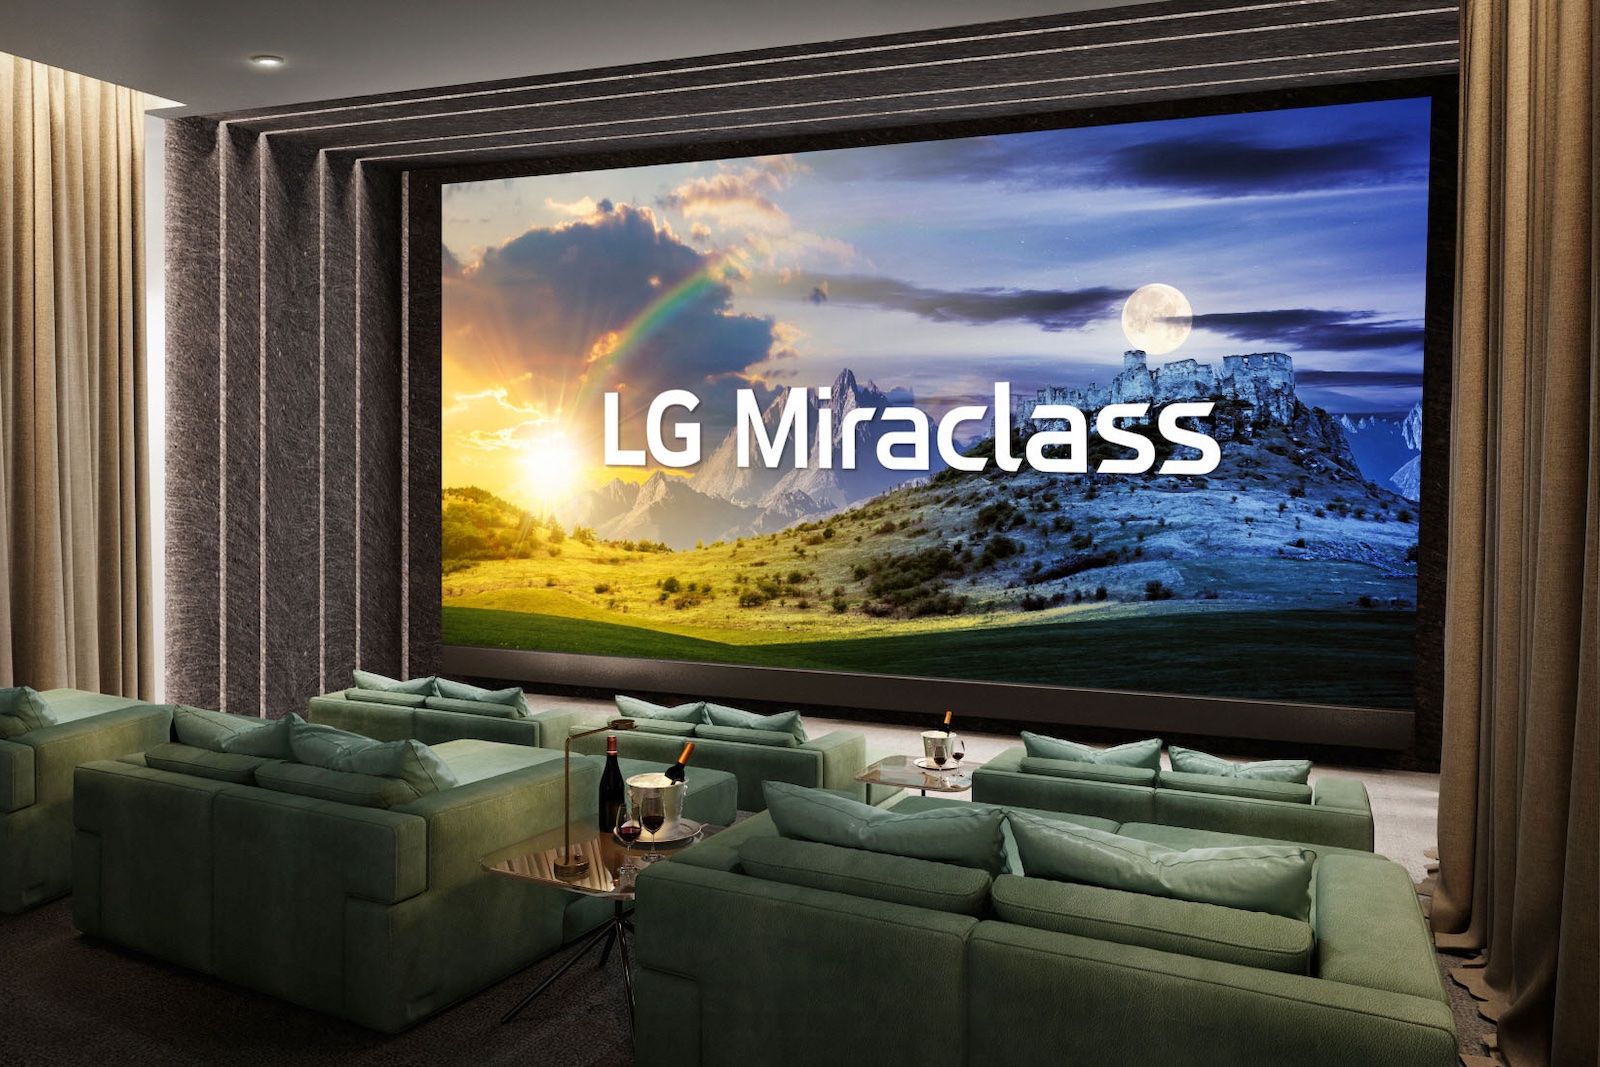 LG Miraclass Cinea Display in a theater setting